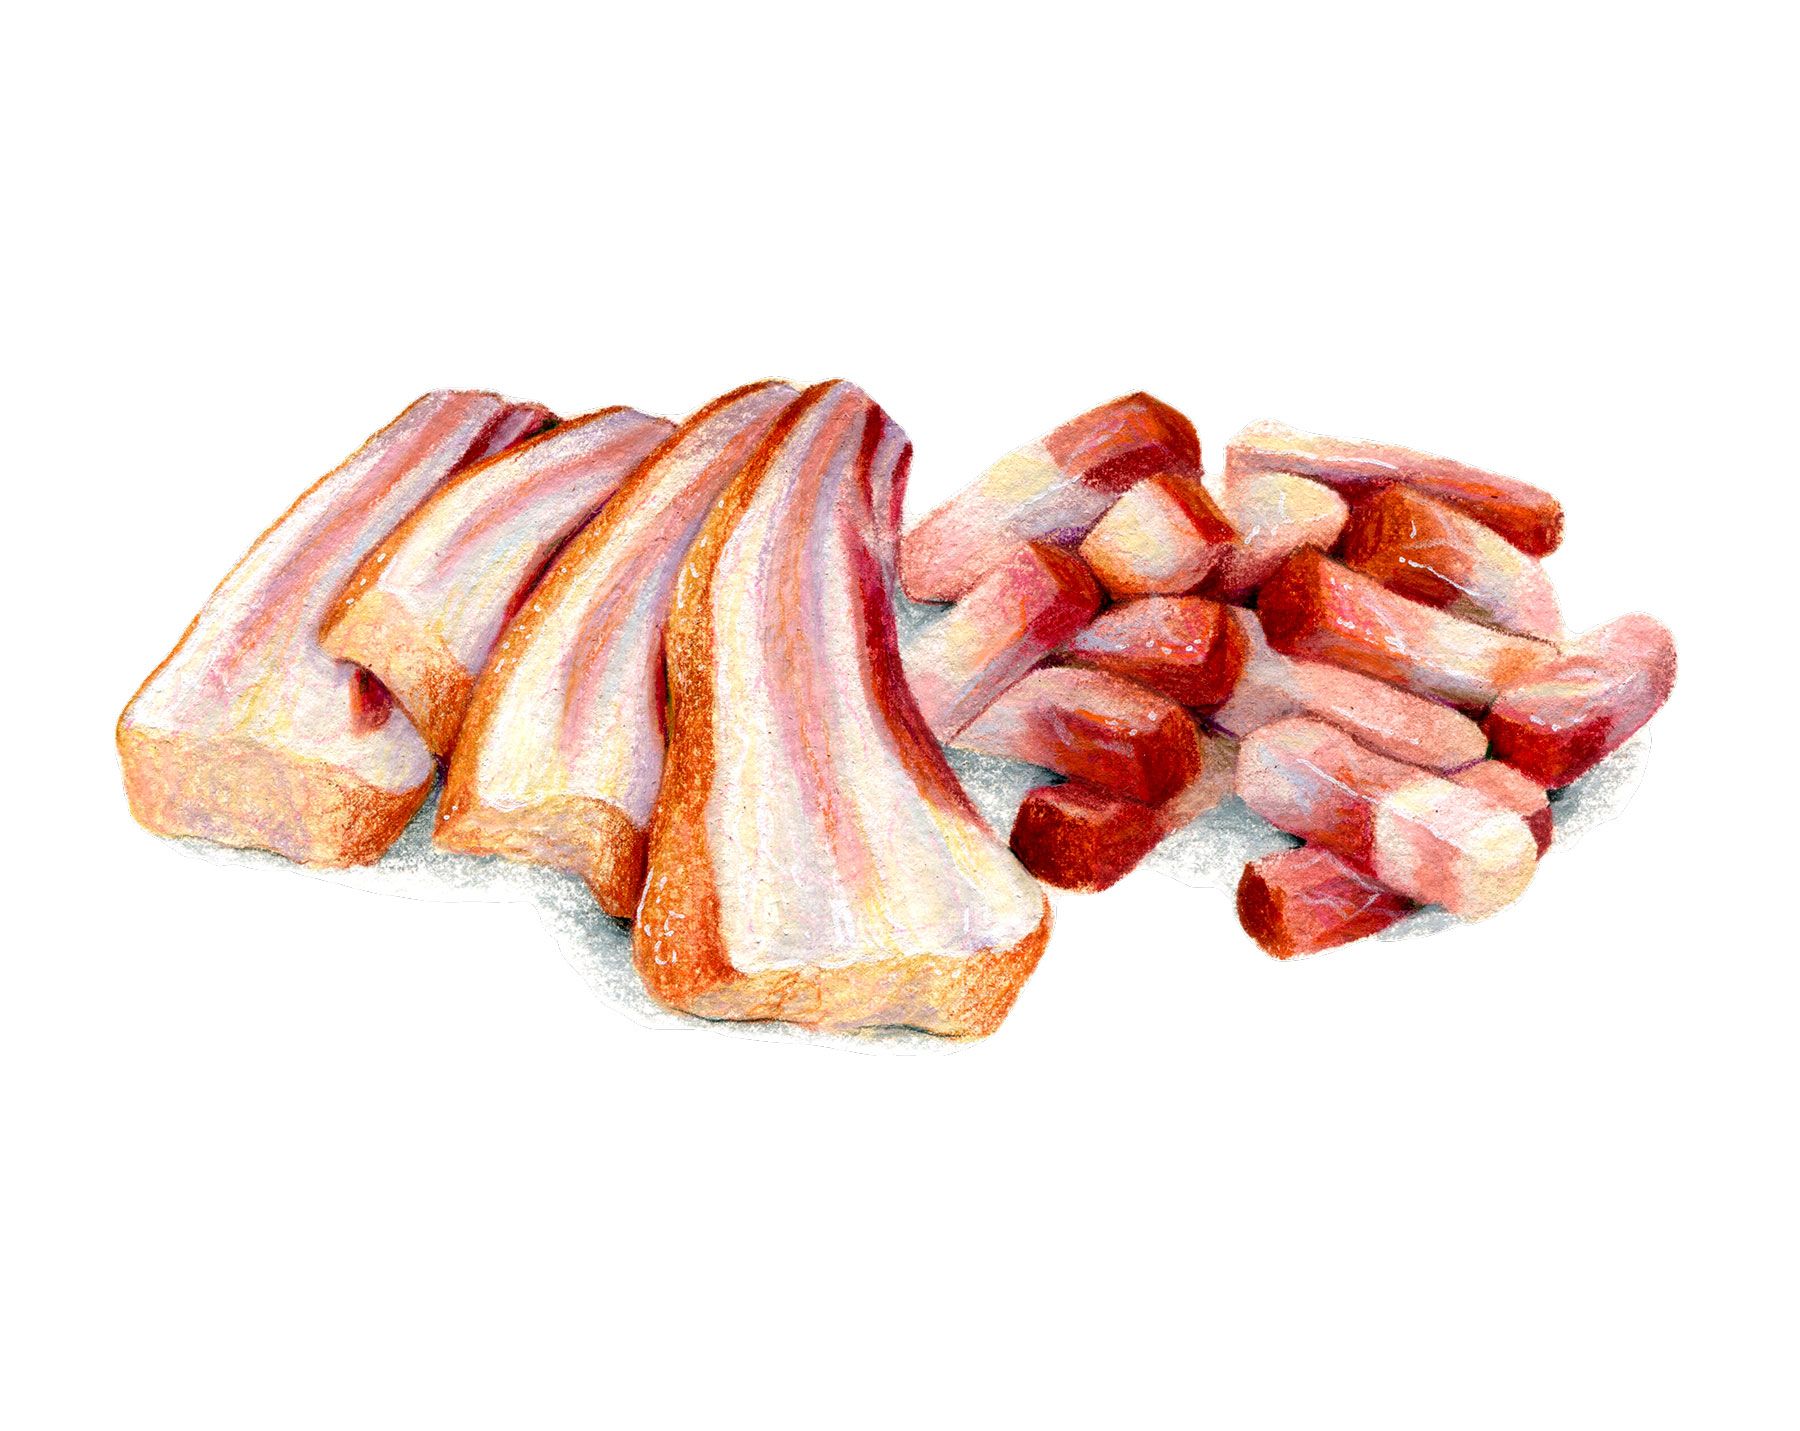 Typer bacon kutt - Tykt kuttet bacon